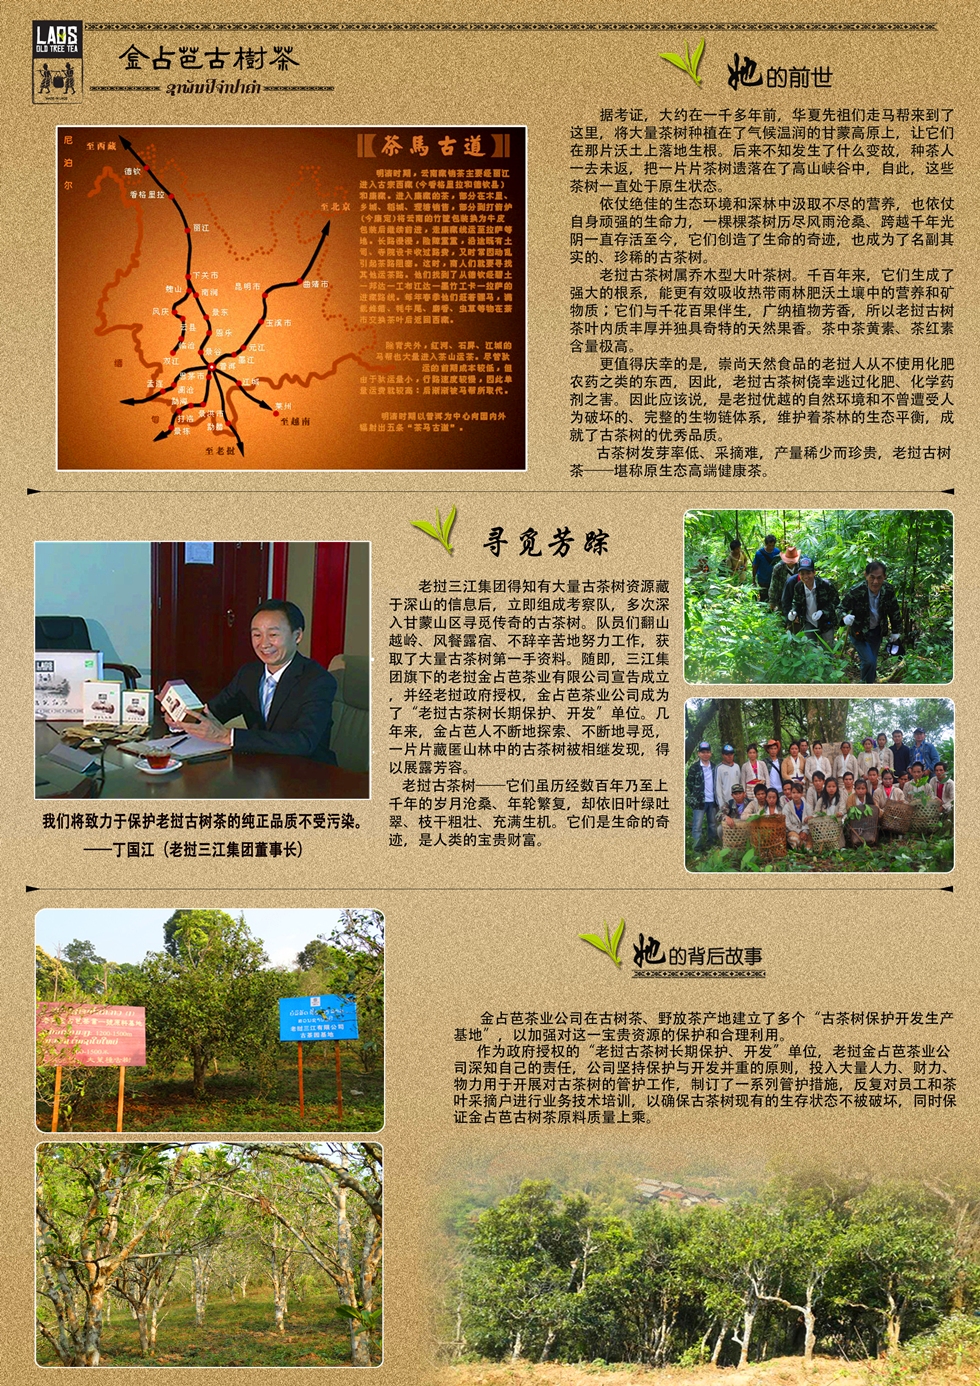 老挝金占芭300年古树生茶-凯旋门生普2014年详情2